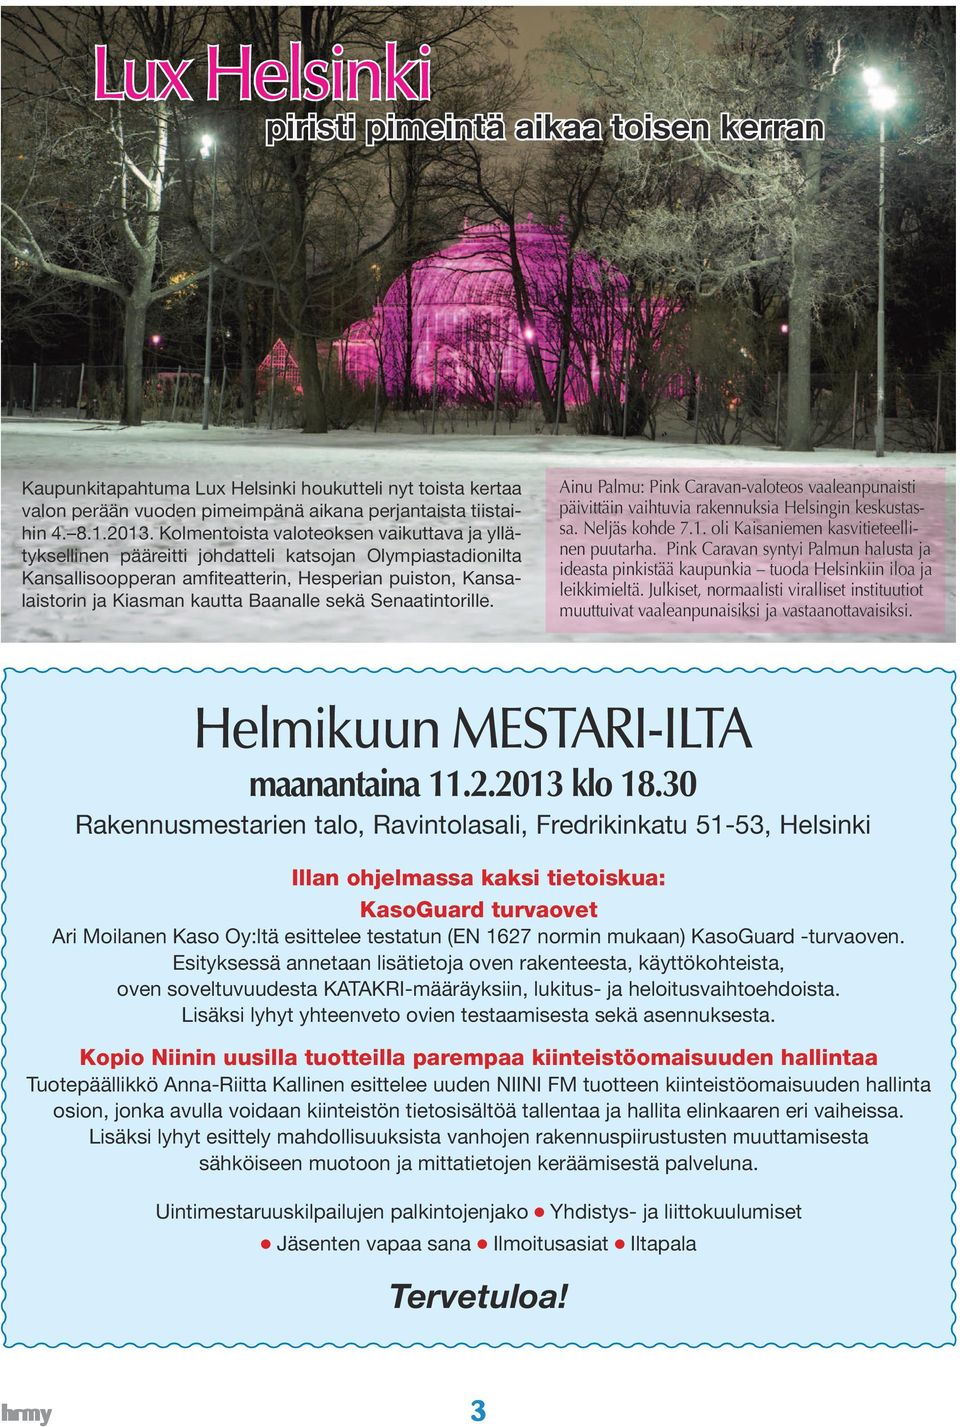 sekä Senaatintorille. Ainu Palmu: Pink Caravan-valoteos vaaleanpunaisti päivittäin vaihtuvia rakennuksia Helsingin keskustassa. Neljäs kohde 7.1. oli Kaisaniemen kasvitieteellinen puutarha.